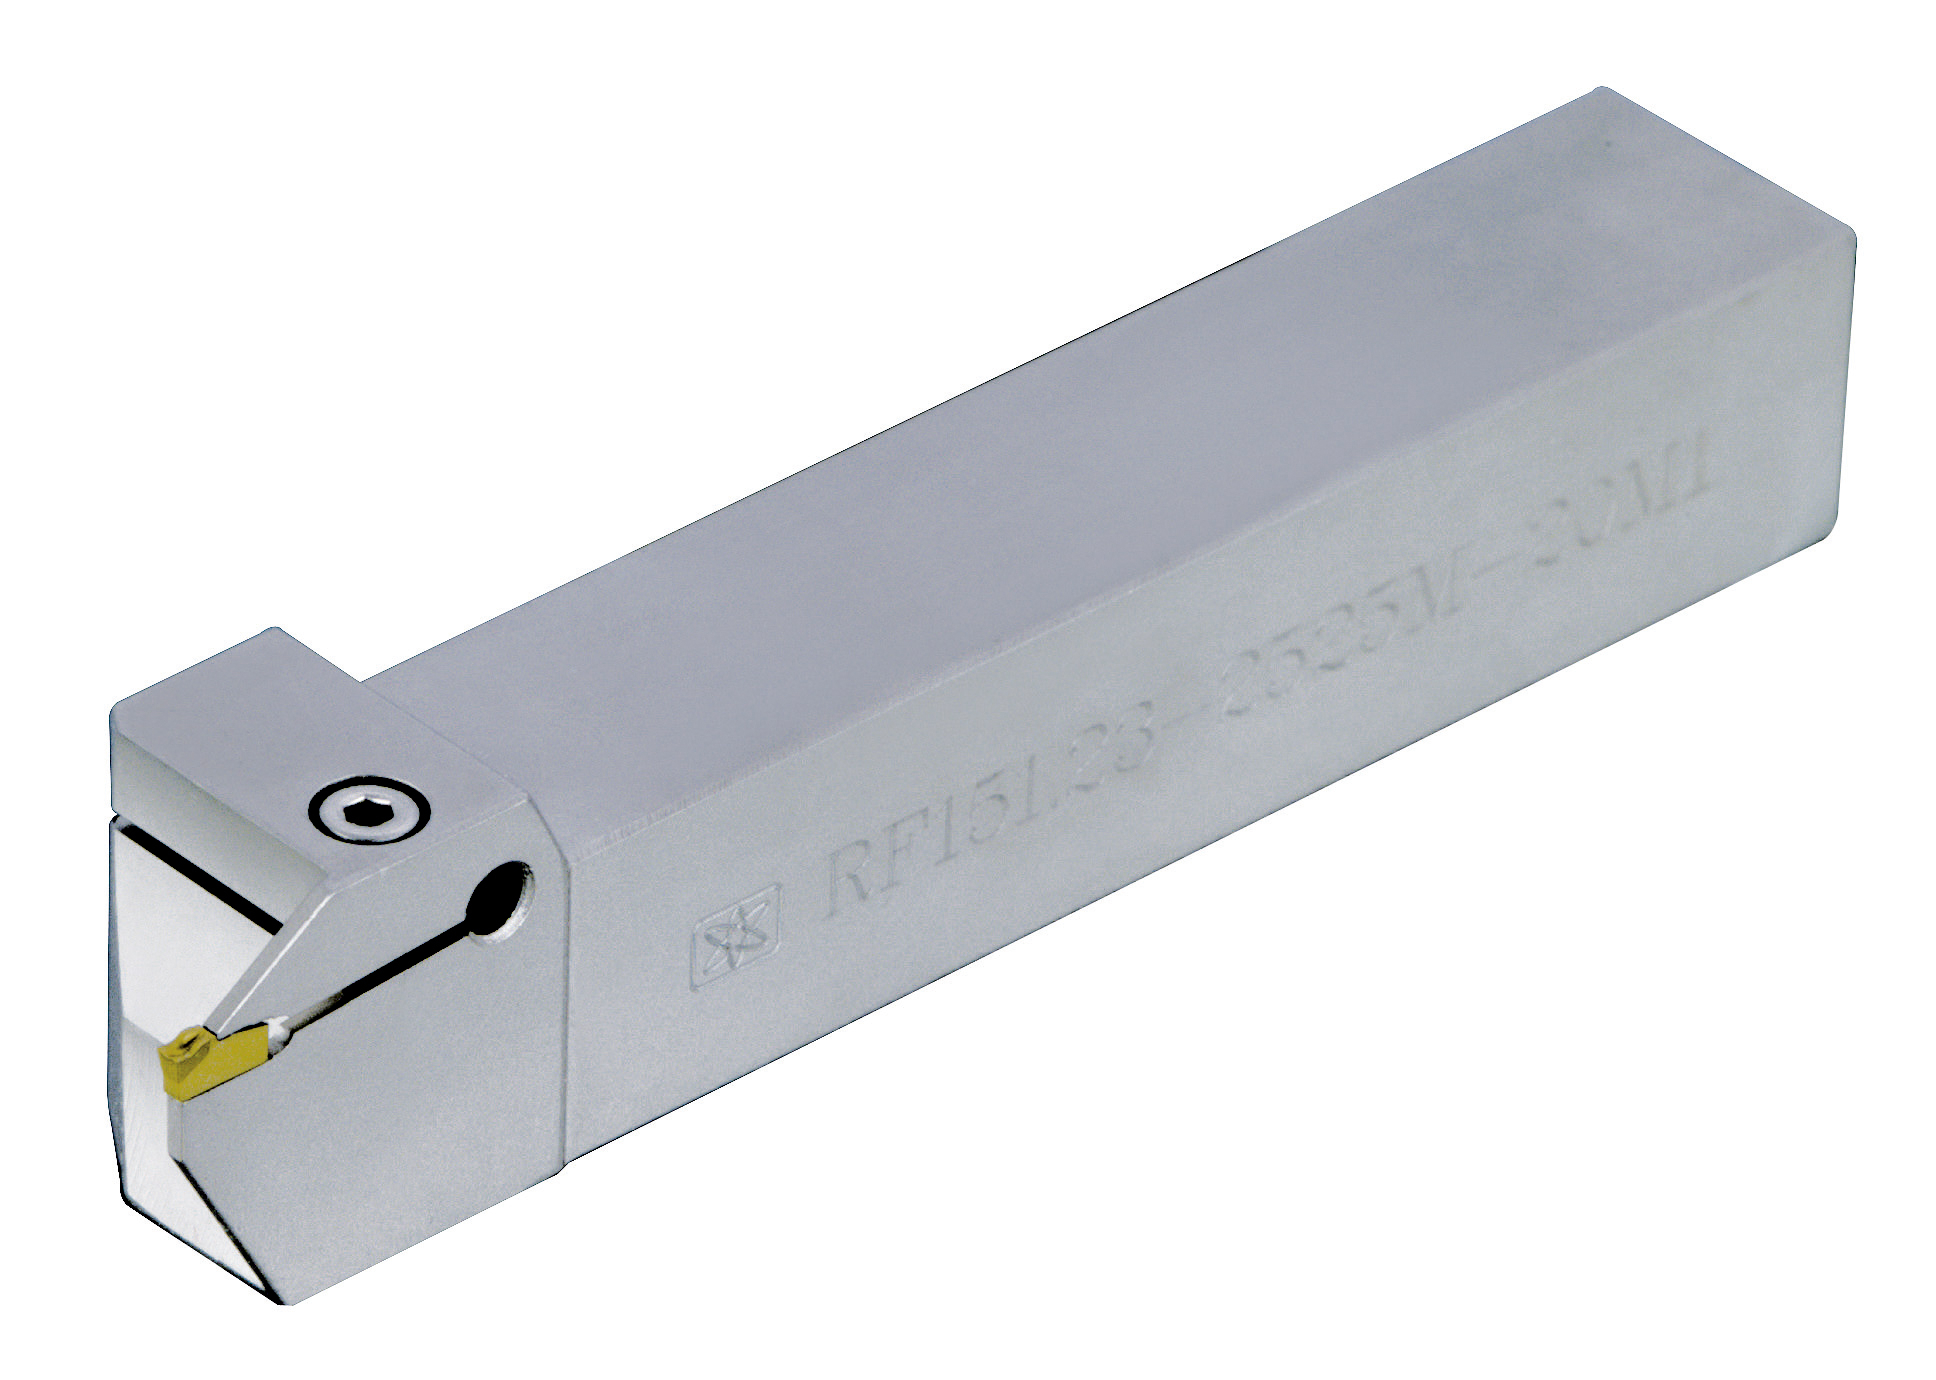 R/LF151.23 (N151.2-200 / N151.2-250 / N151.2-300) 外徑切槽刀